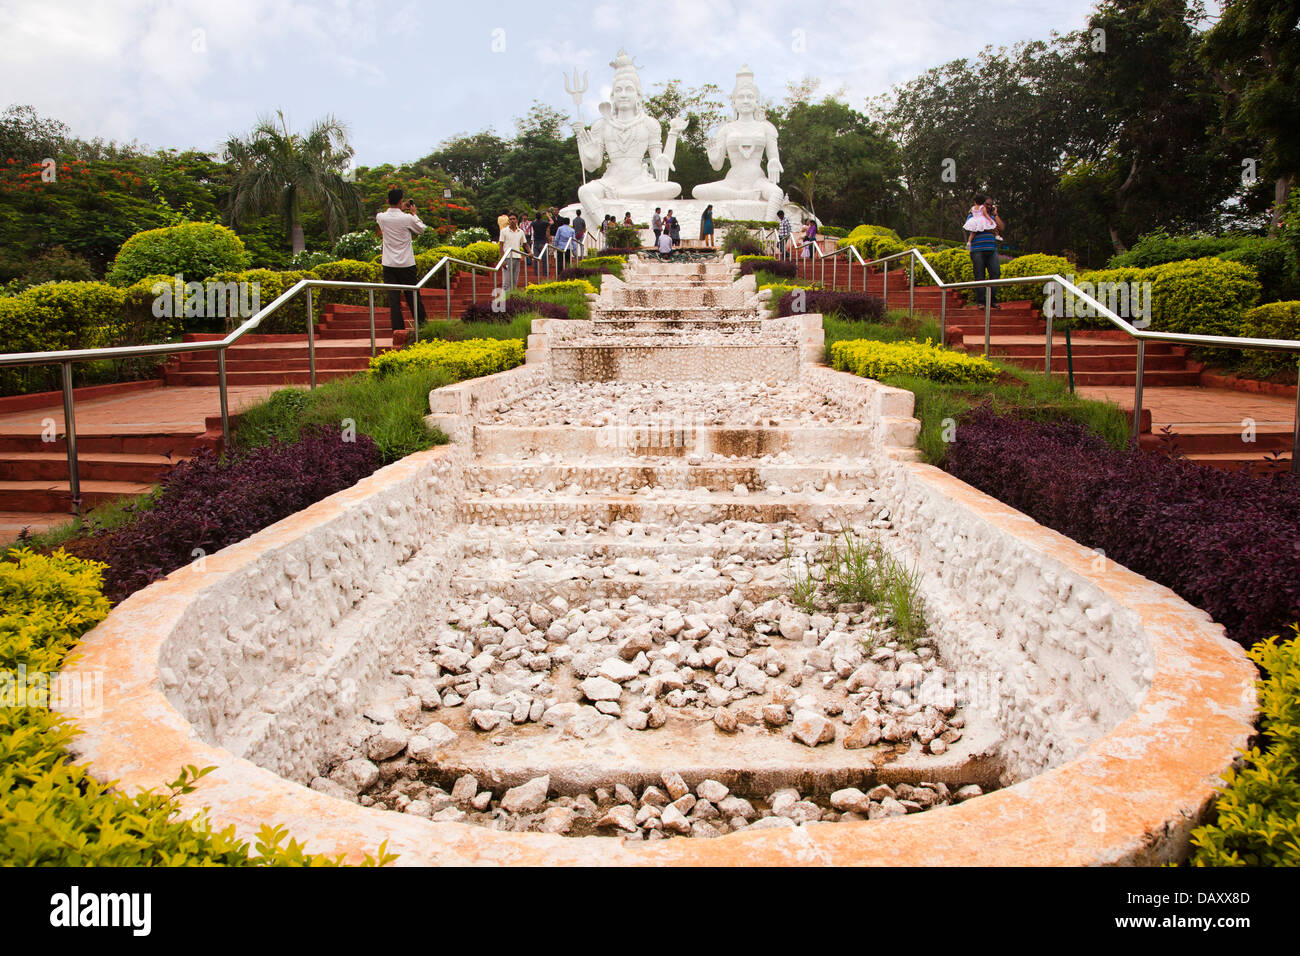 Des statues de Seigneur Shiva et Parvathi de déesse dans un parc, Kailasagiri Park, Ranong, Andhra Pradesh, Inde Banque D'Images